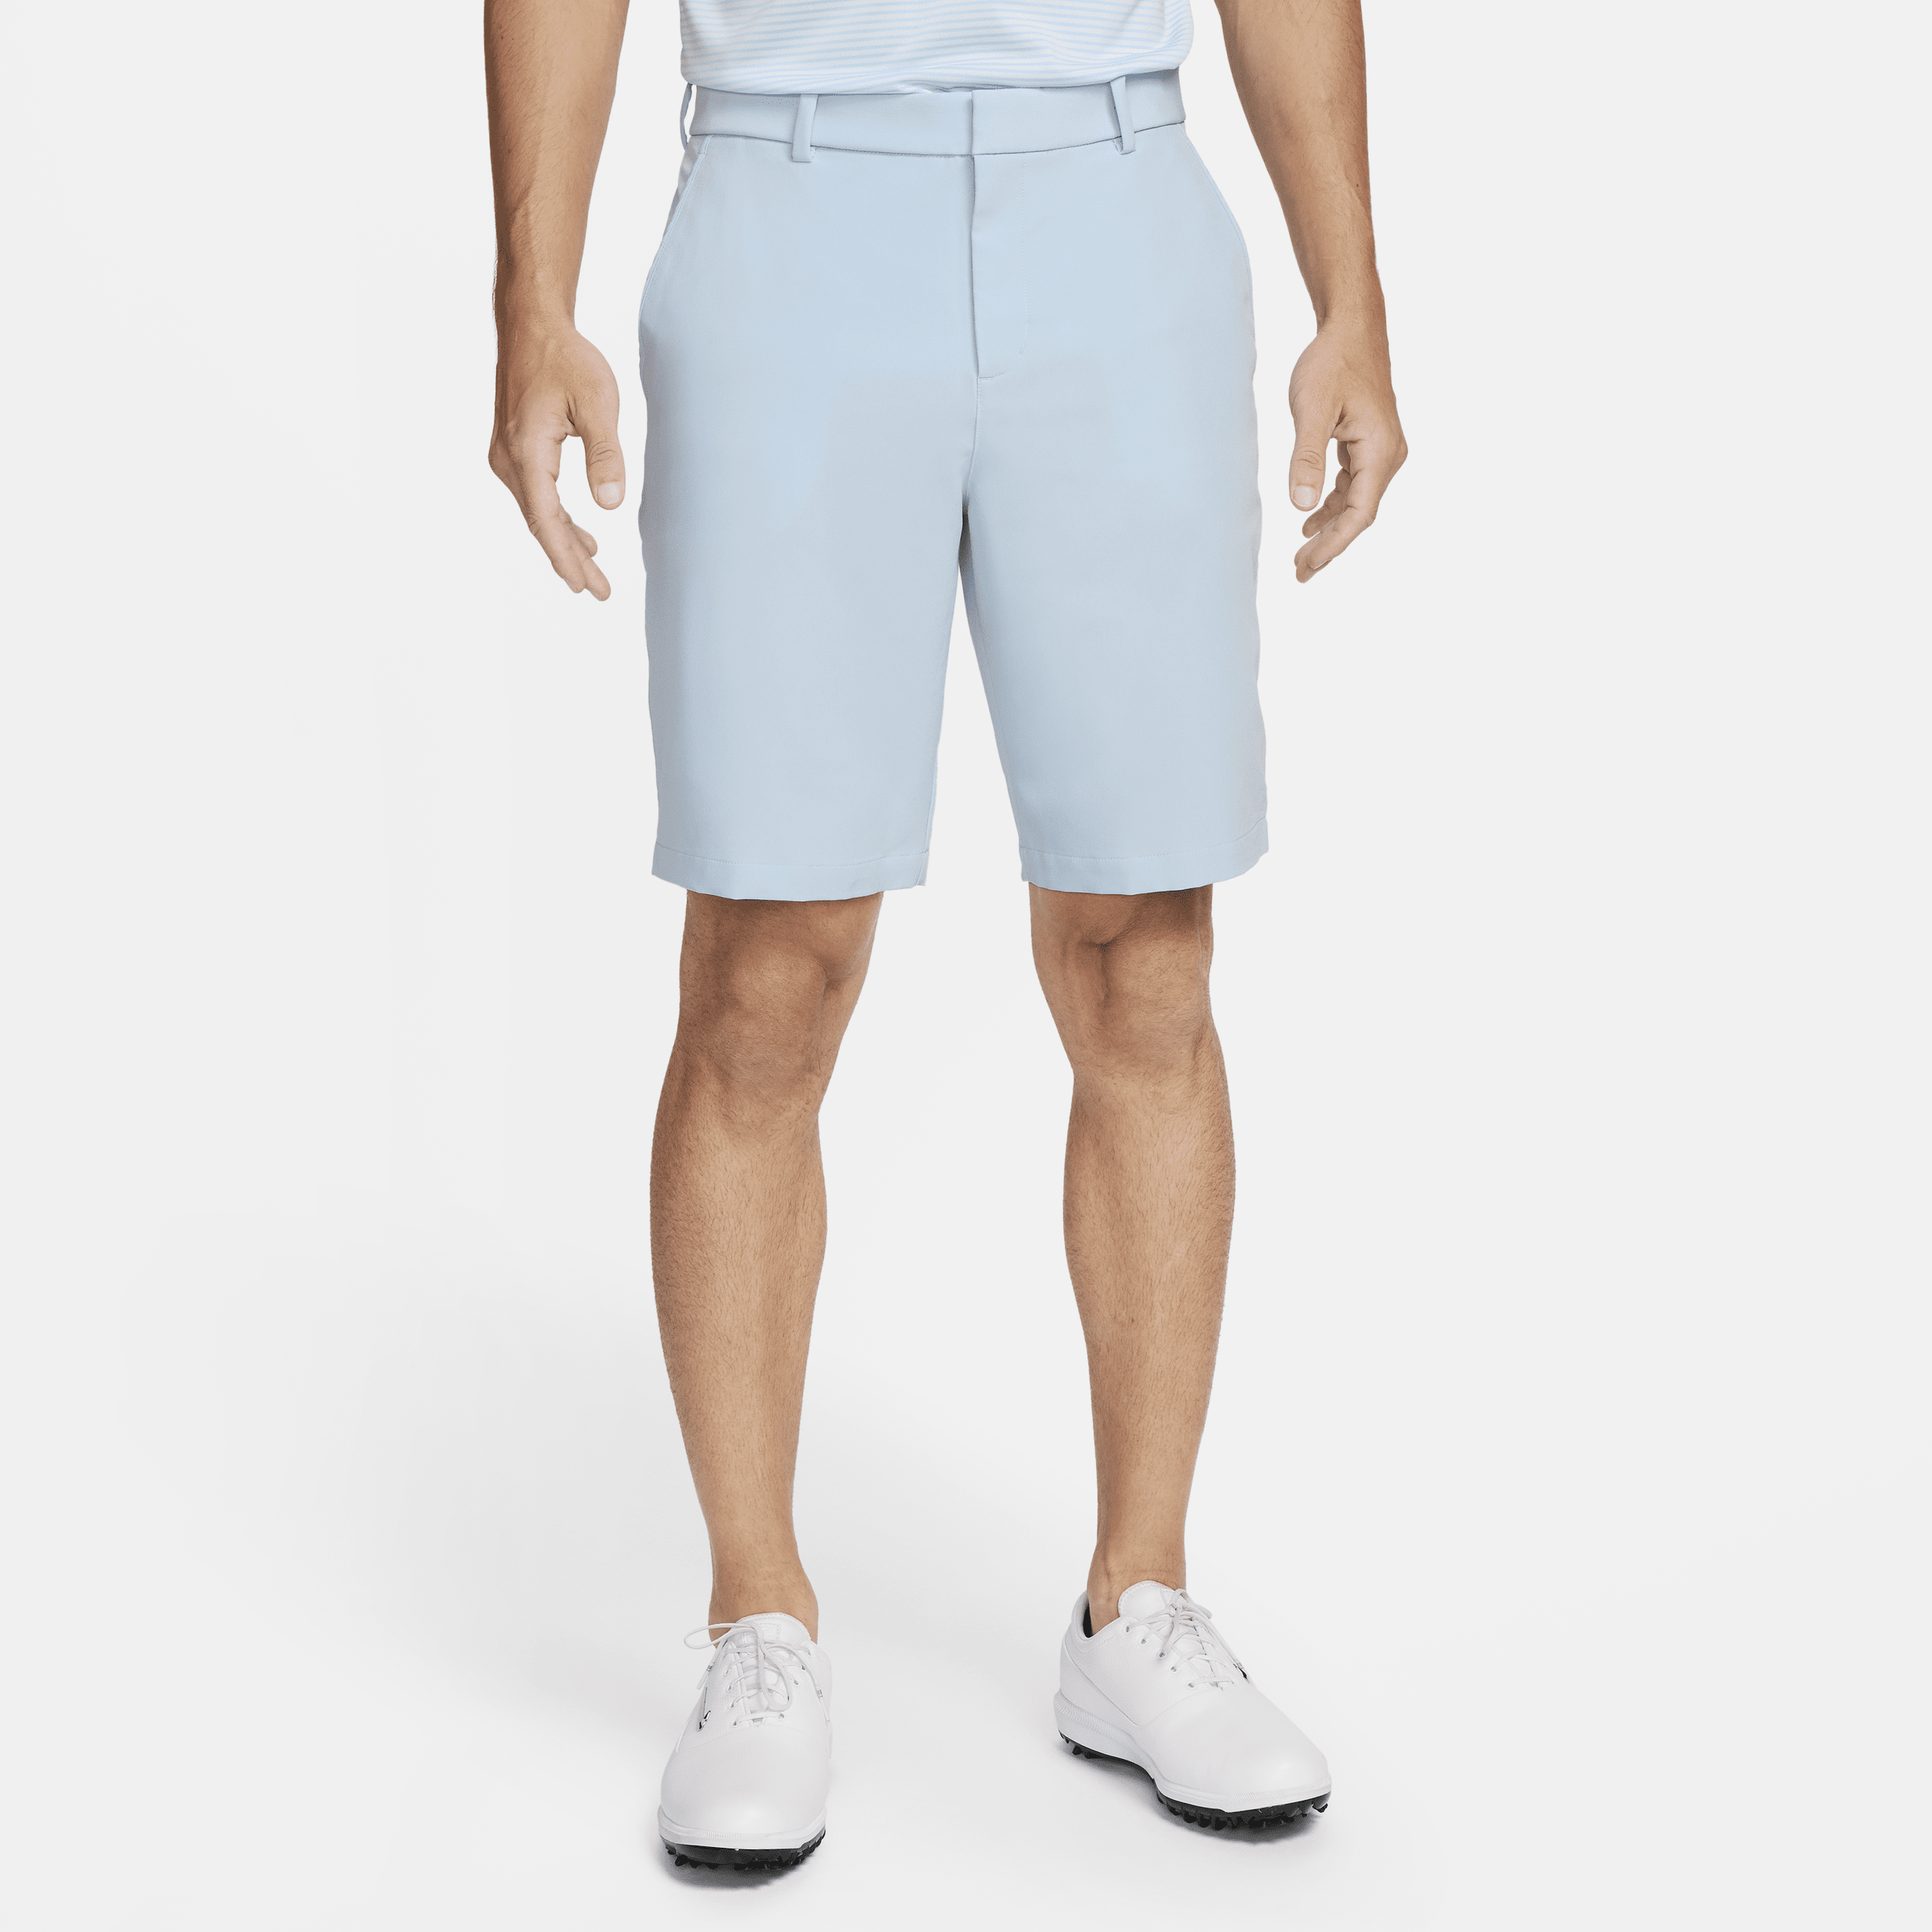 Nike Men's Dri-fit Golf Shorts In Blue